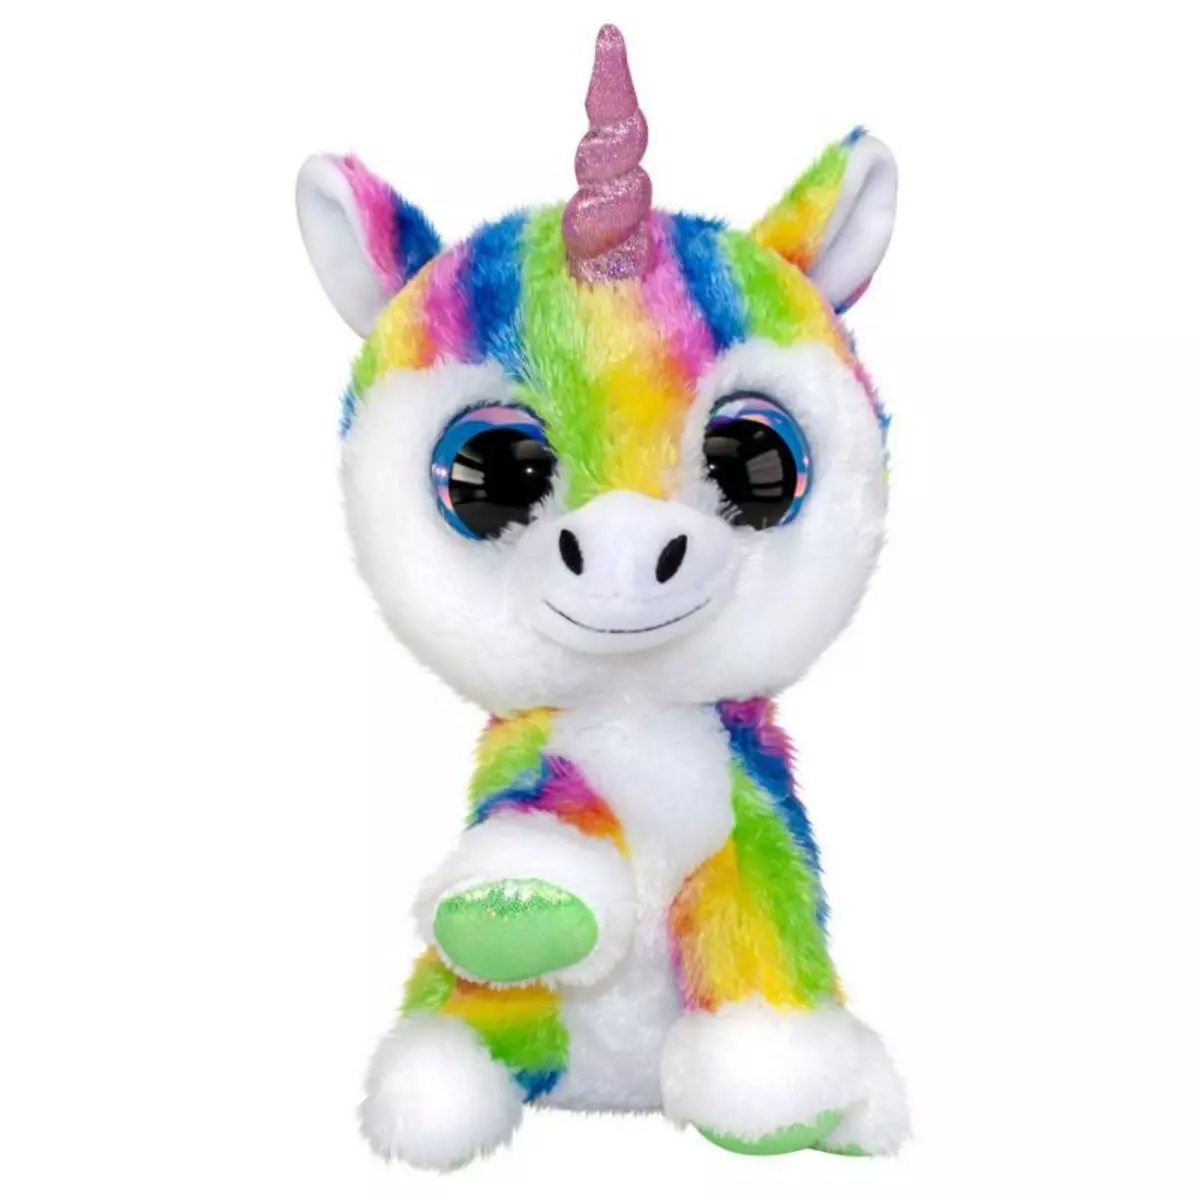 LUMO STARS Lumo Stars Plush Toy - Unicorn Dream, 24 cm